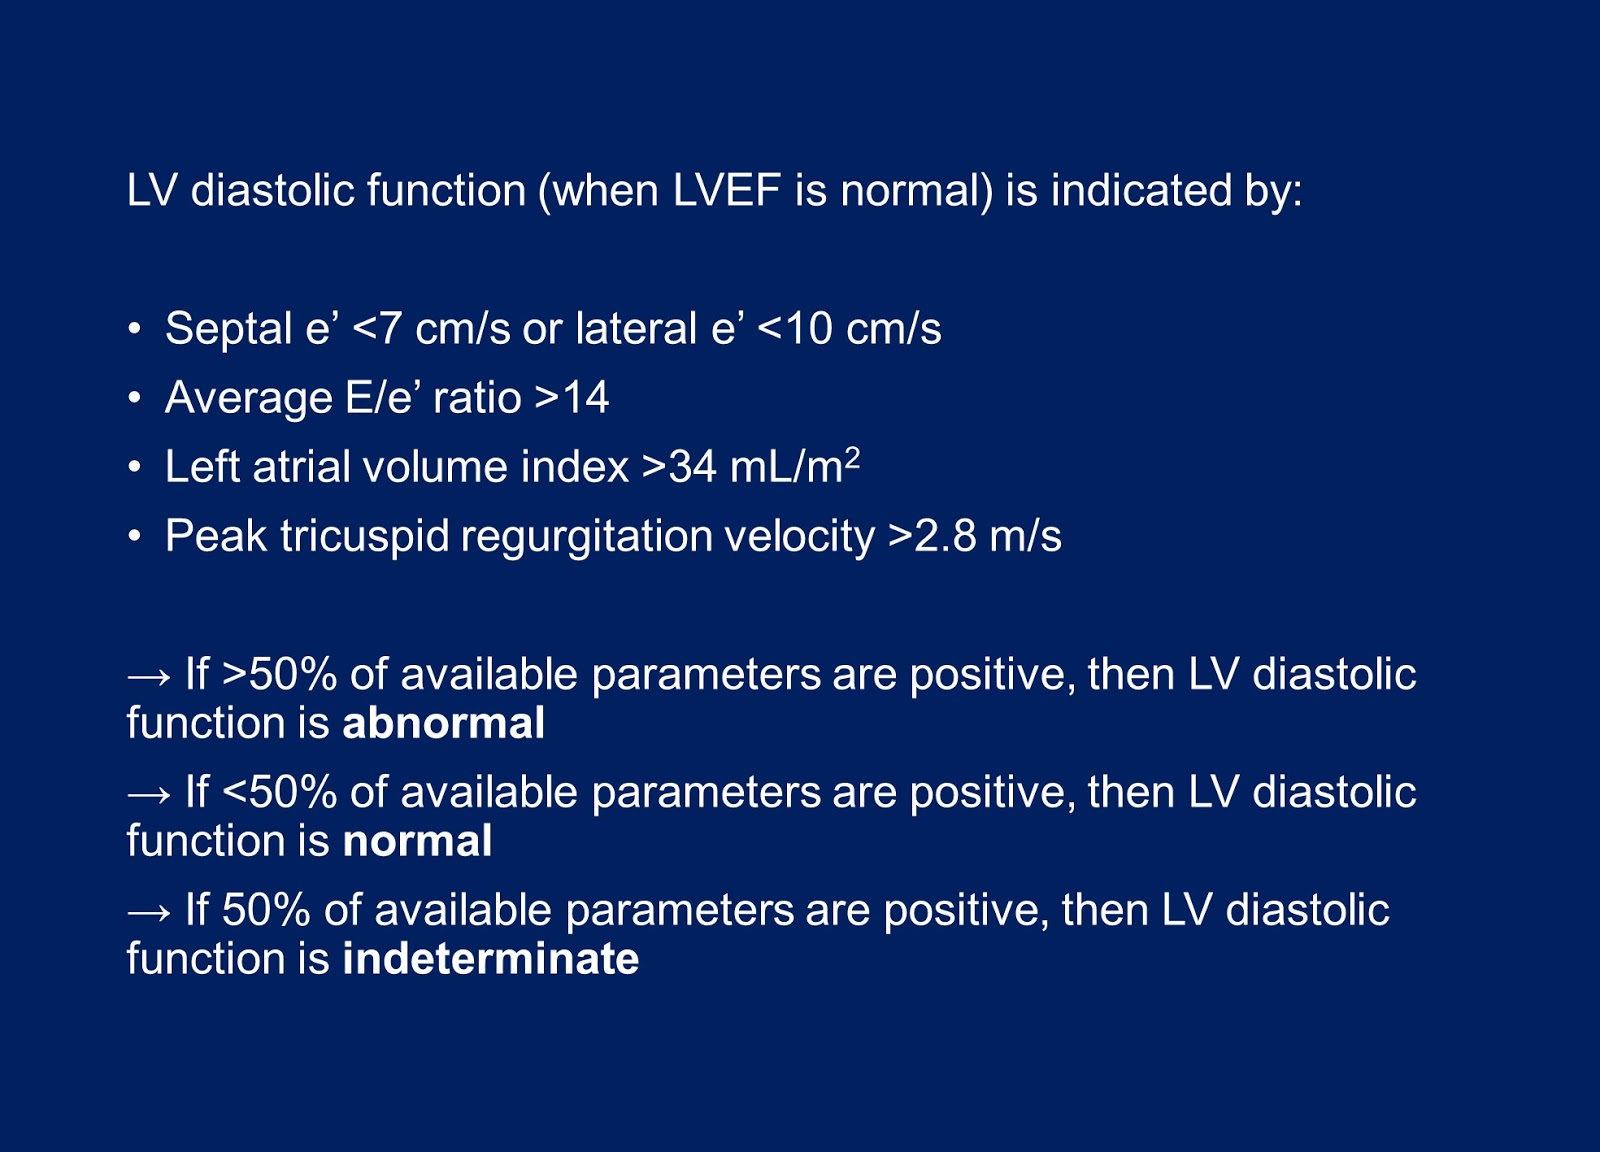 Andrew R. Houghton: Echo assessment of LV diastolic function